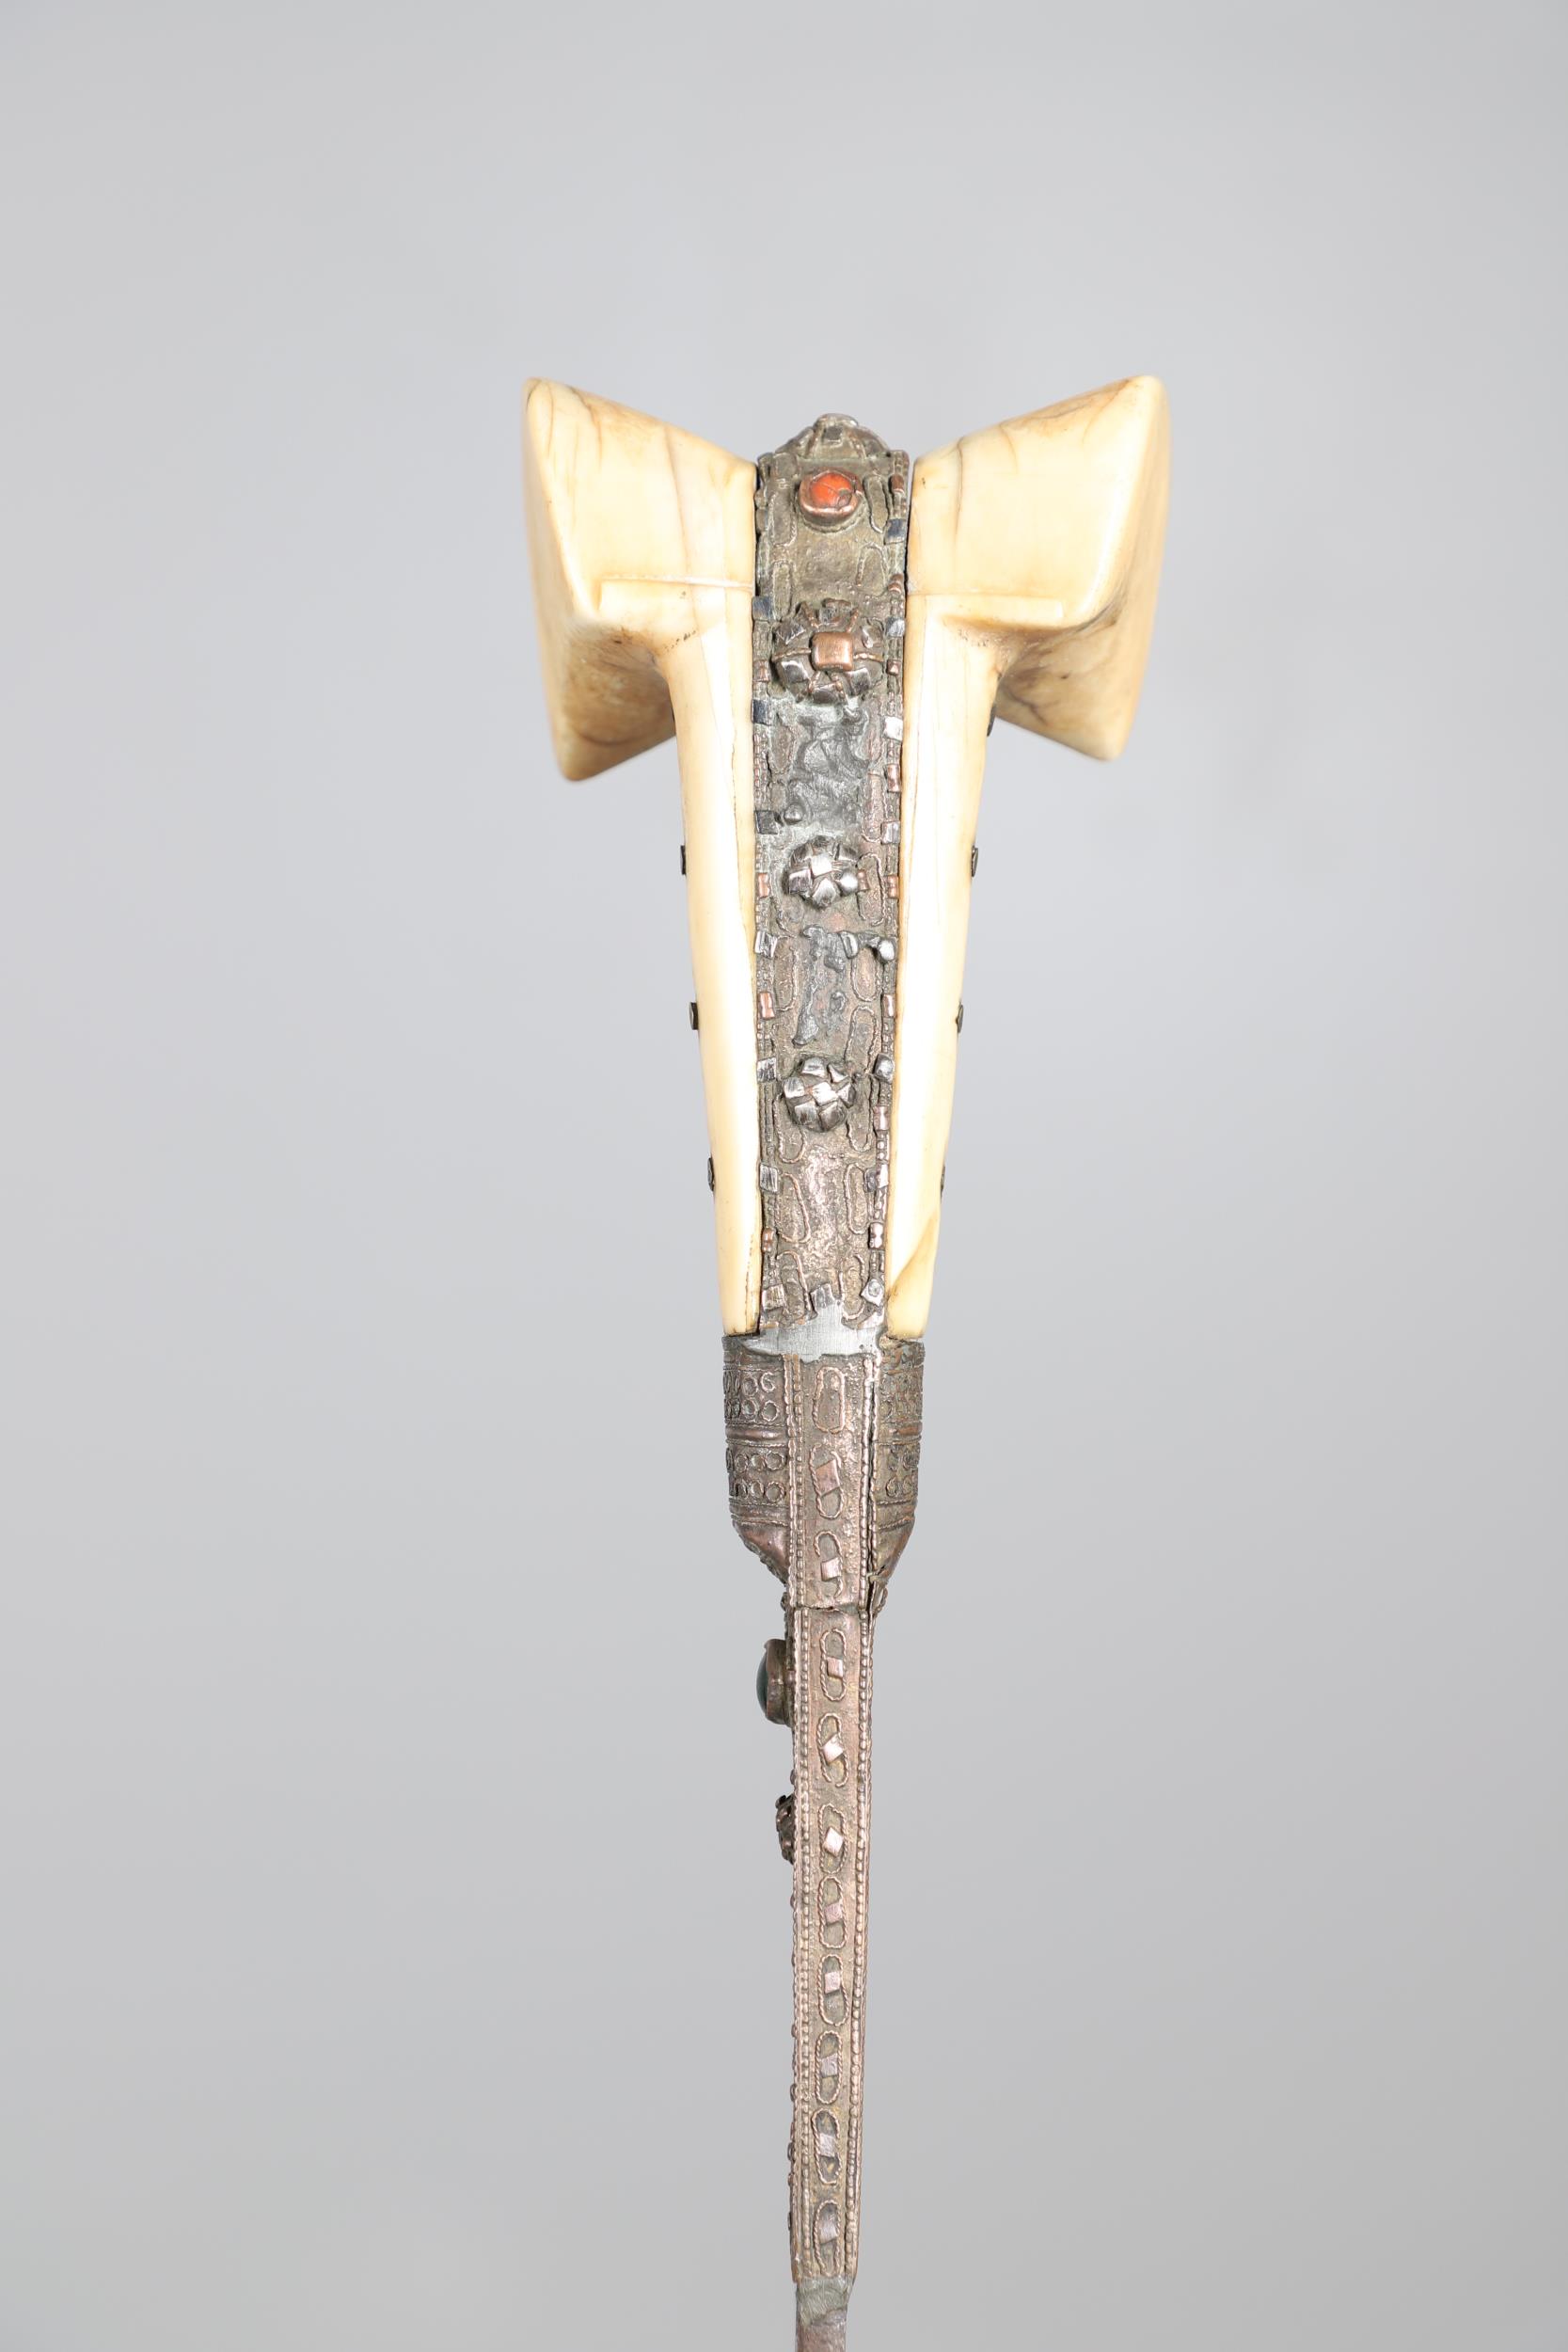 A TURKISH OTTOMAN YATAGHAN SWORD. - Image 3 of 13